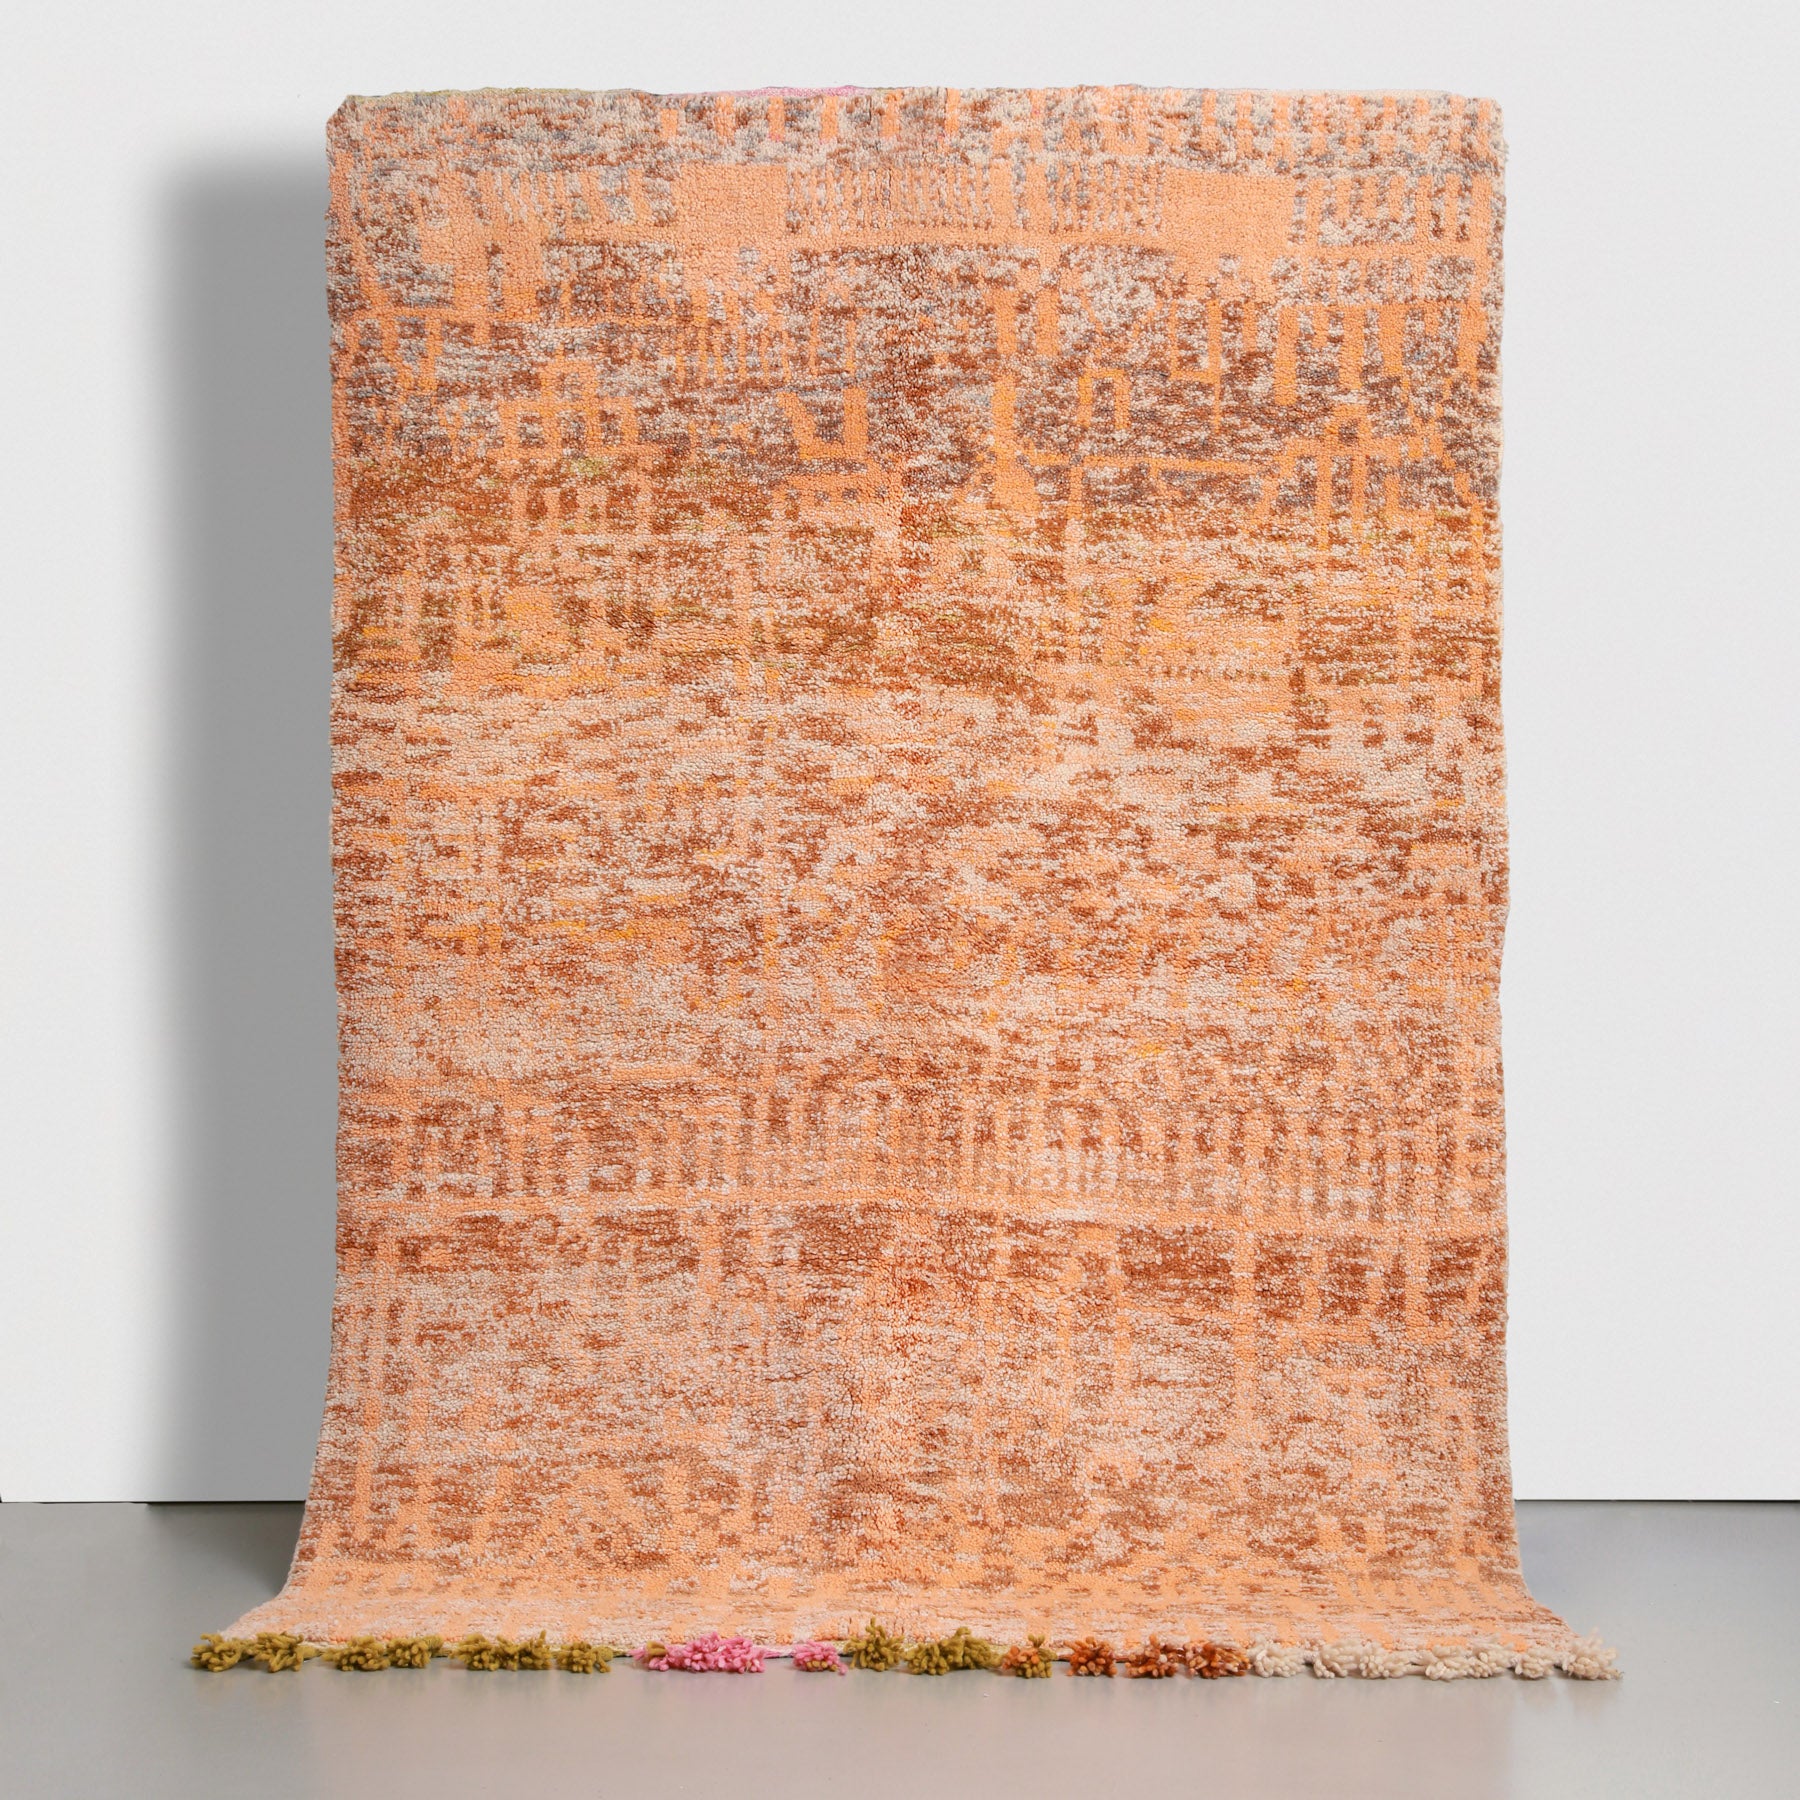 tappeto beni ourain realizzato a mano con lana colorata arancione bianca e marrone chiara. ci sono de disegni astratti arancioni